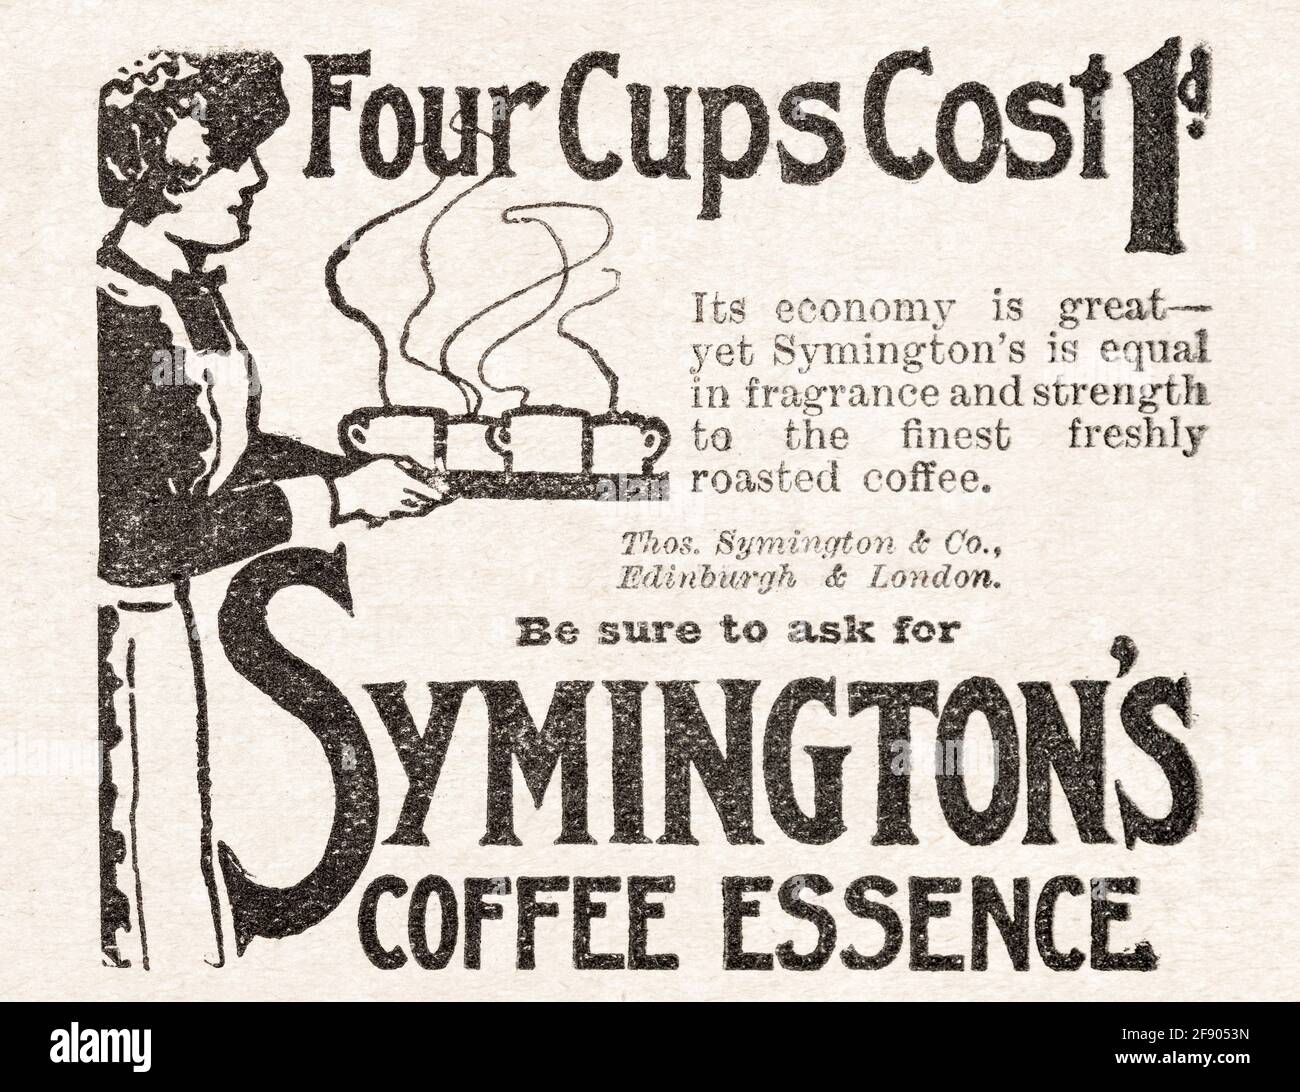 Publicité de l'ancien magazine Edwardian vintage pour l'essence de café de Symington de 1912. Histoire de la publicité, histoire des marques de café. Banque D'Images